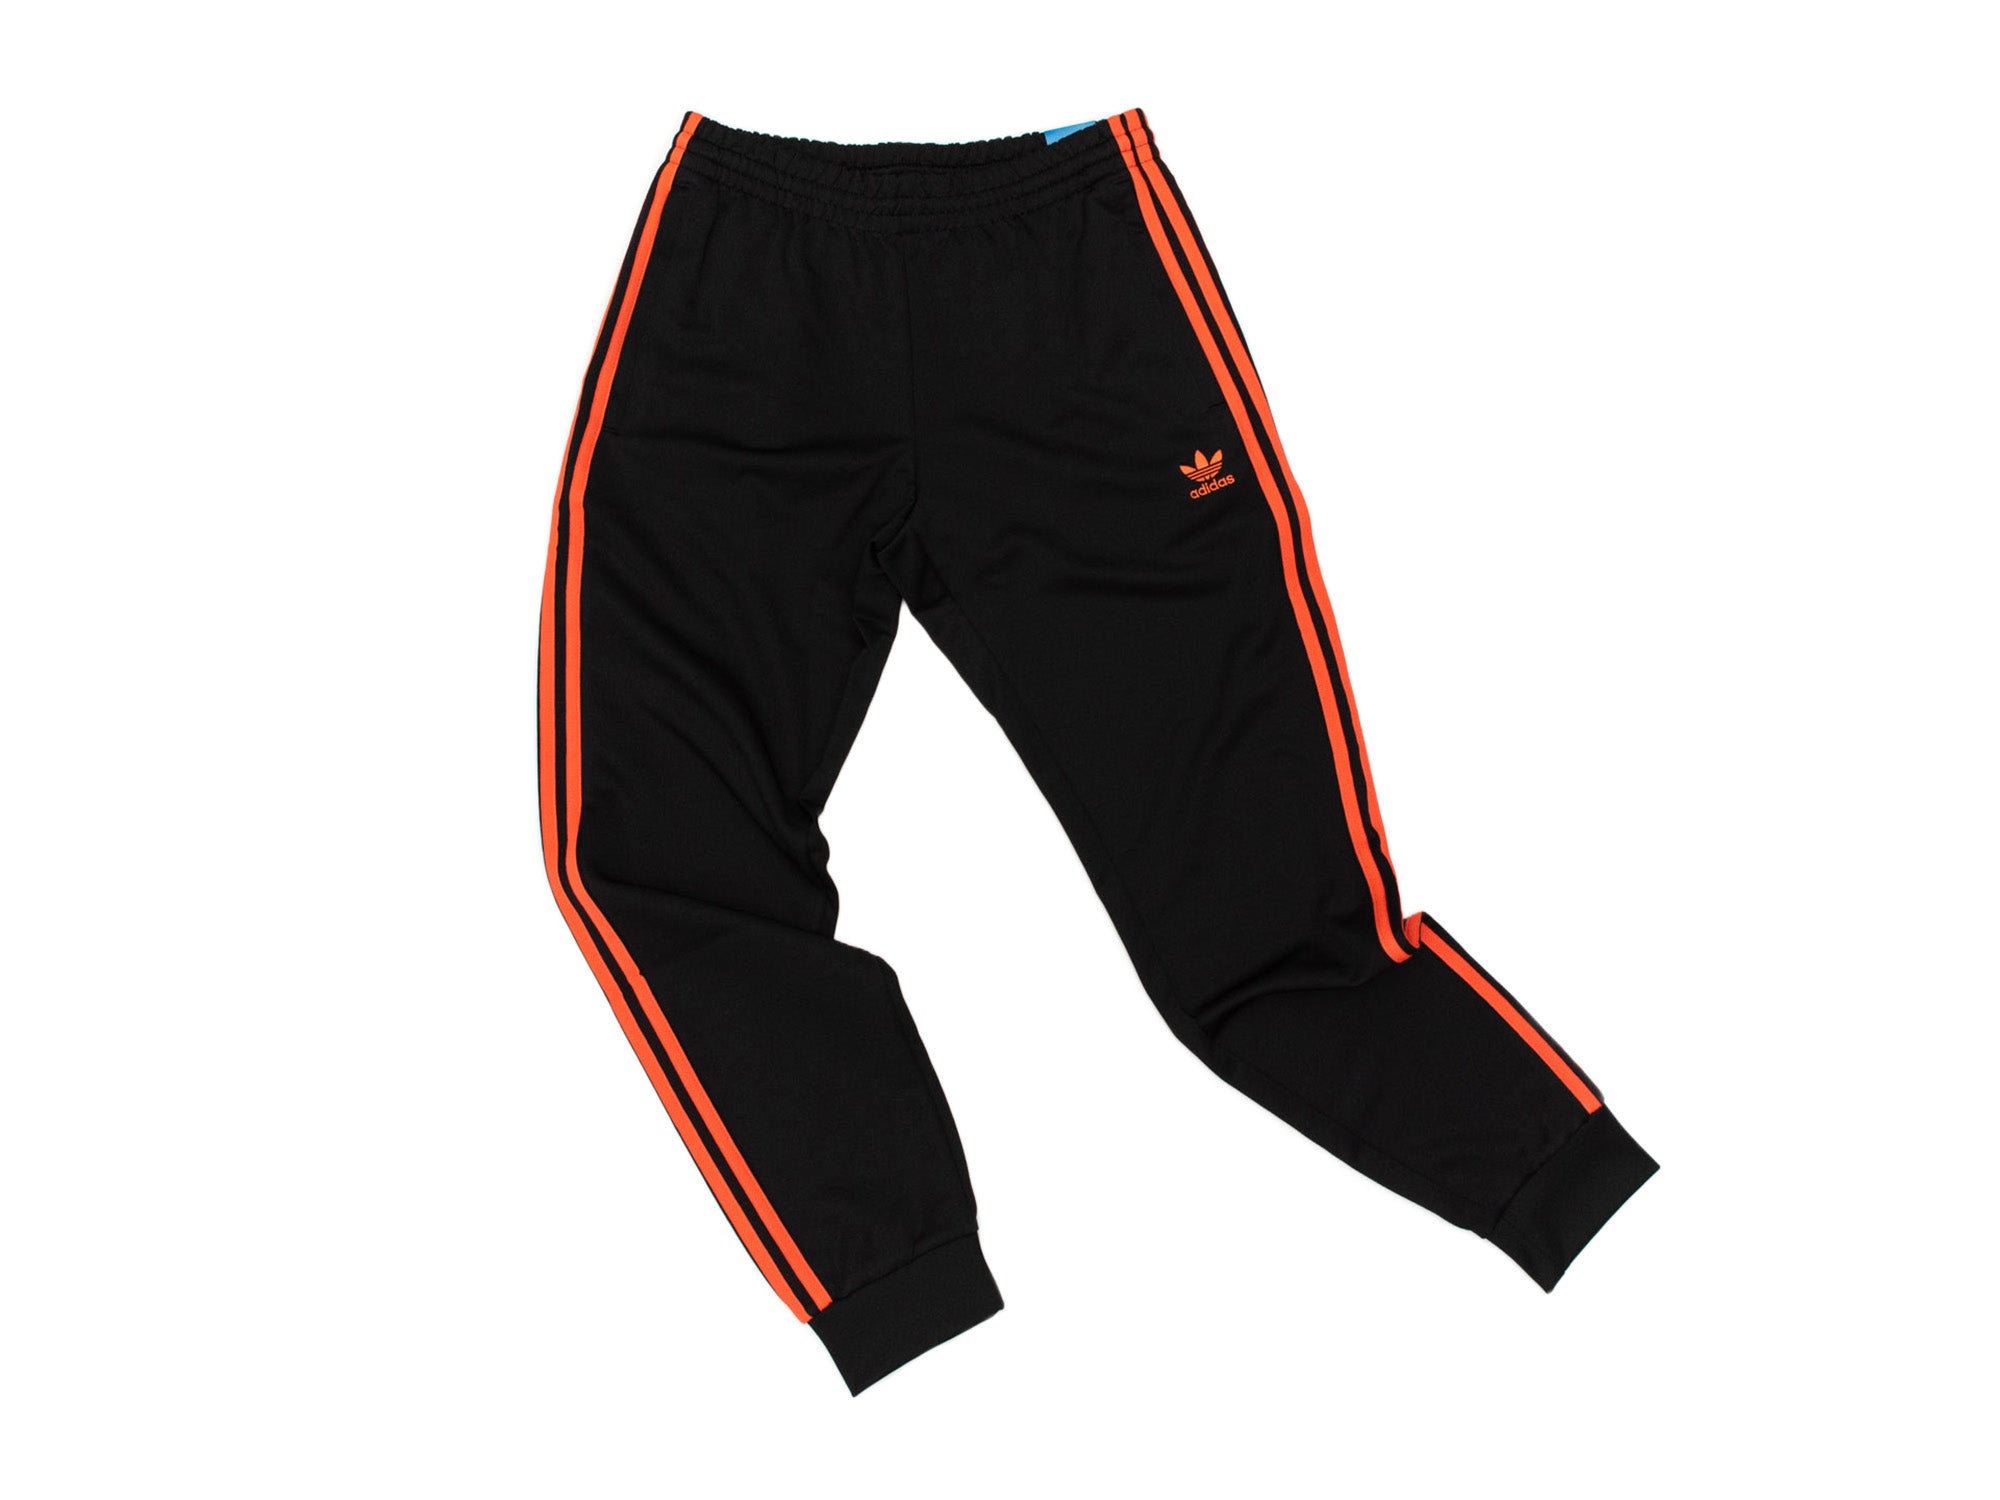 Adidas SST Track Pants 'Orange' – Unheardof Brand